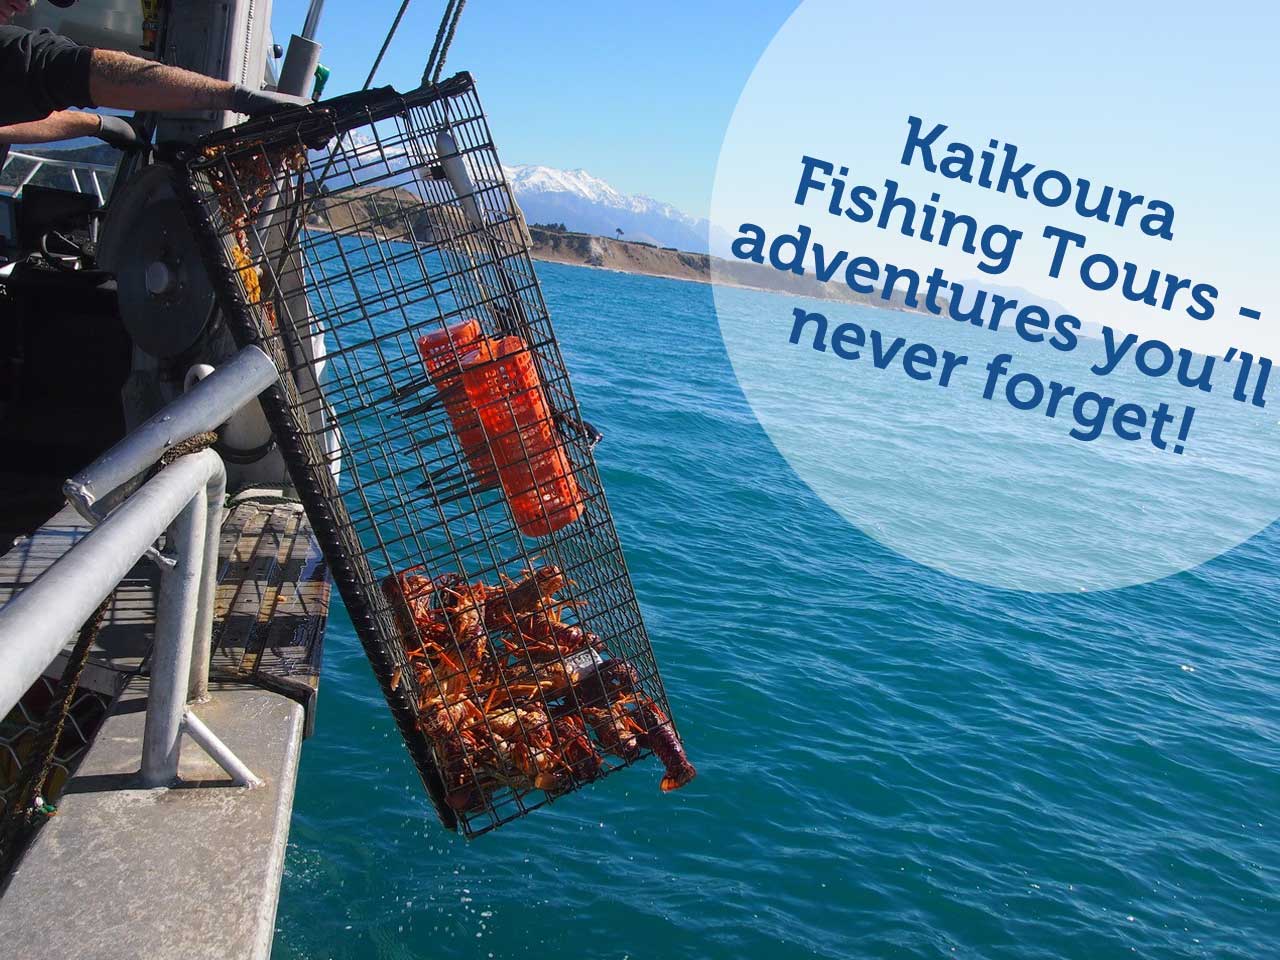 kaikoura fishing tours facebook